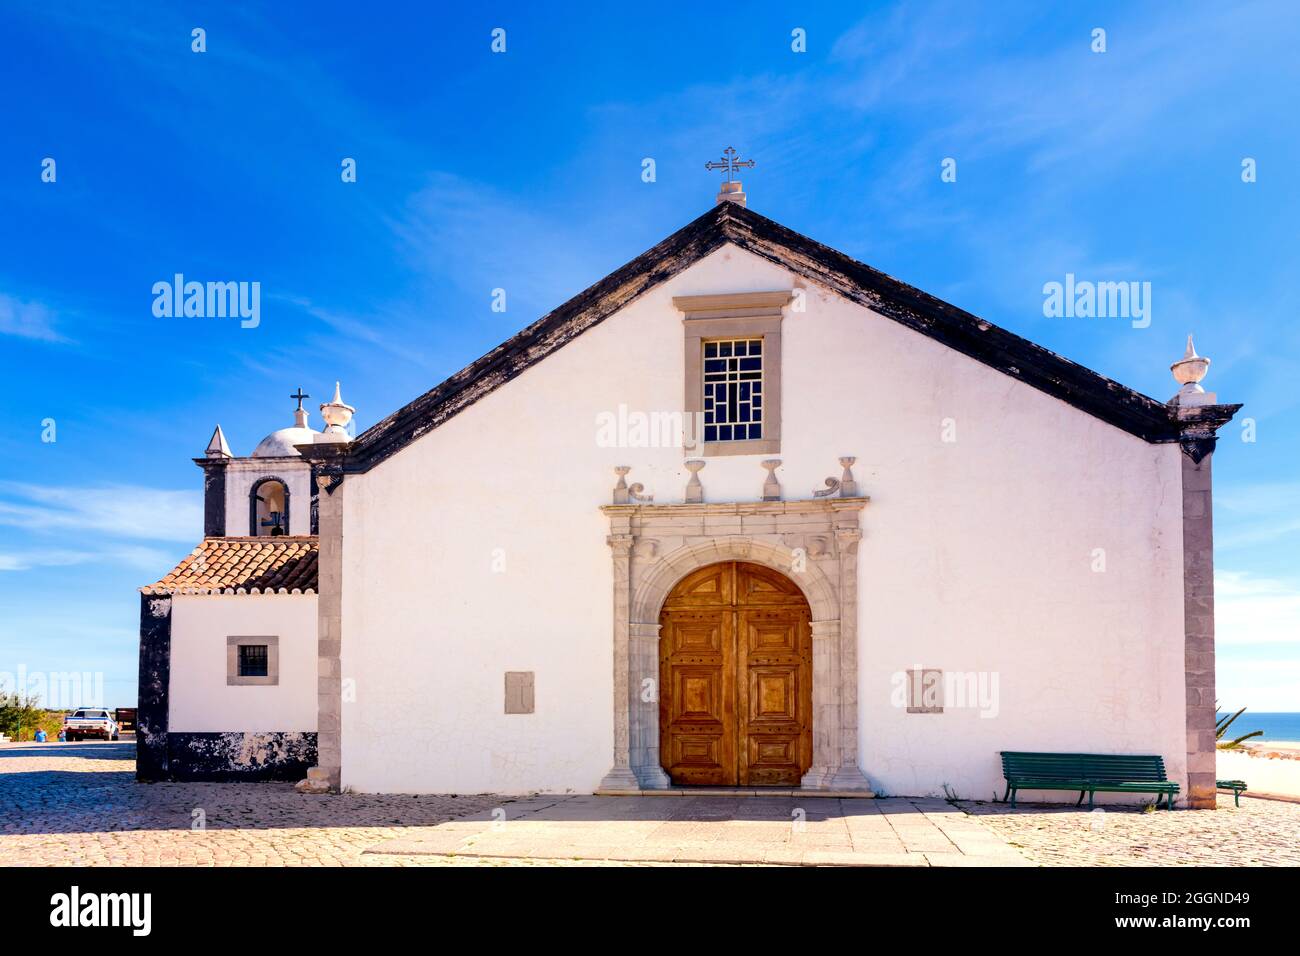 La capilla de la iglesia católica pintada de blanco de Igreja de Nossa Senhora da Assunção contra un cielo azul con espacio de copia Cacelo Velha Algarve Portugal Foto de stock